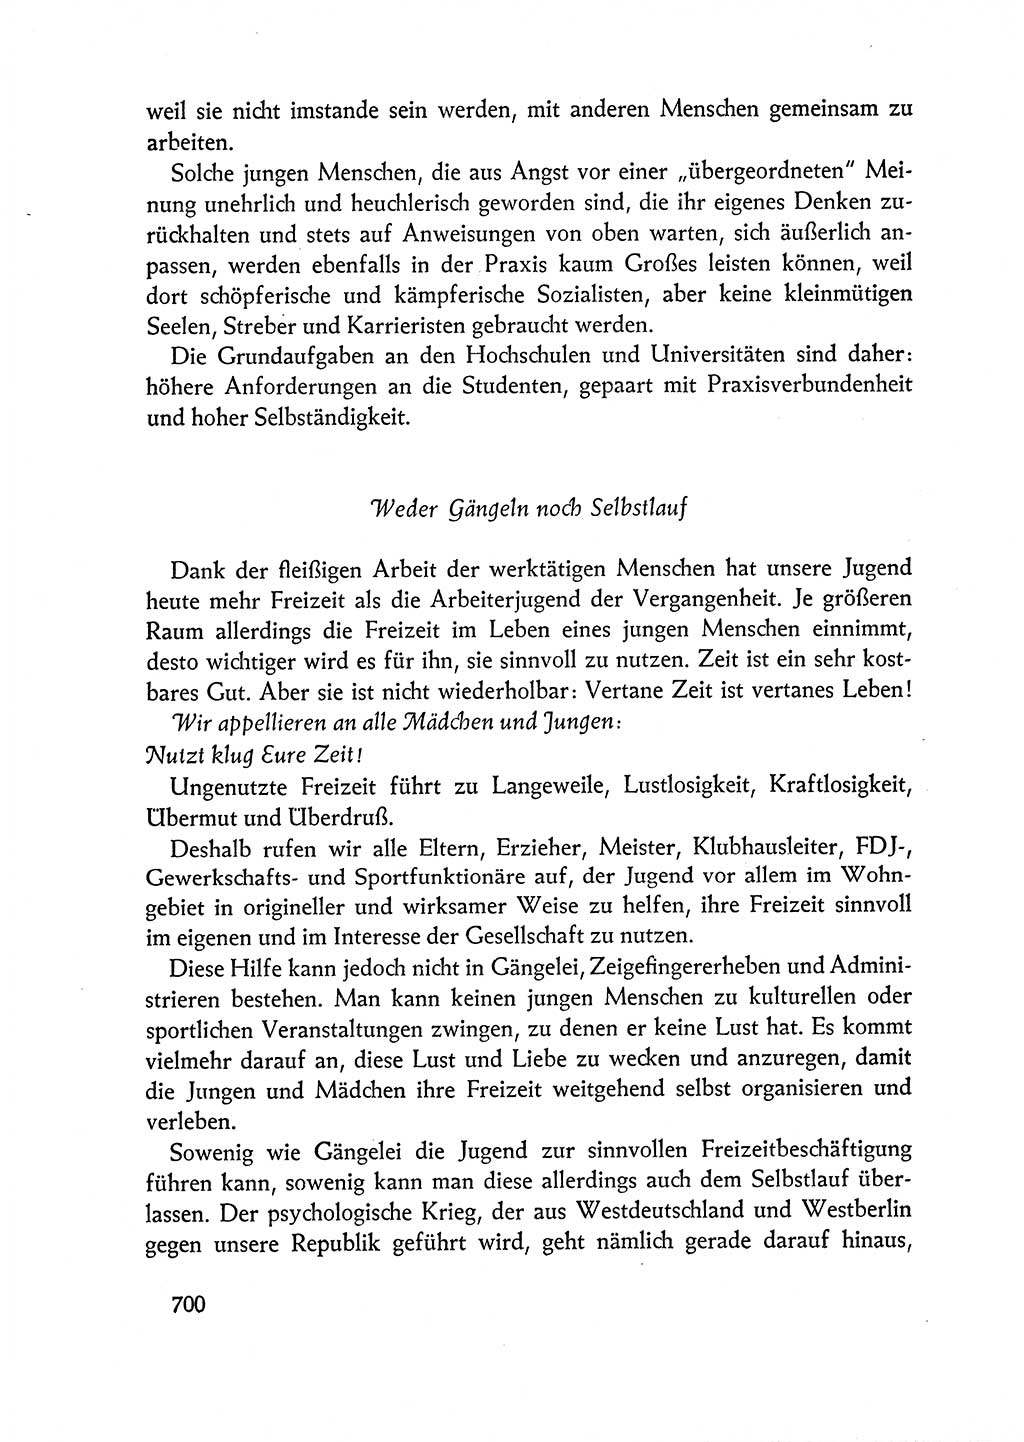 Dokumente der Sozialistischen Einheitspartei Deutschlands (SED) [Deutsche Demokratische Republik (DDR)] 1962-1963, Seite 700 (Dok. SED DDR 1962-1963, S. 700)